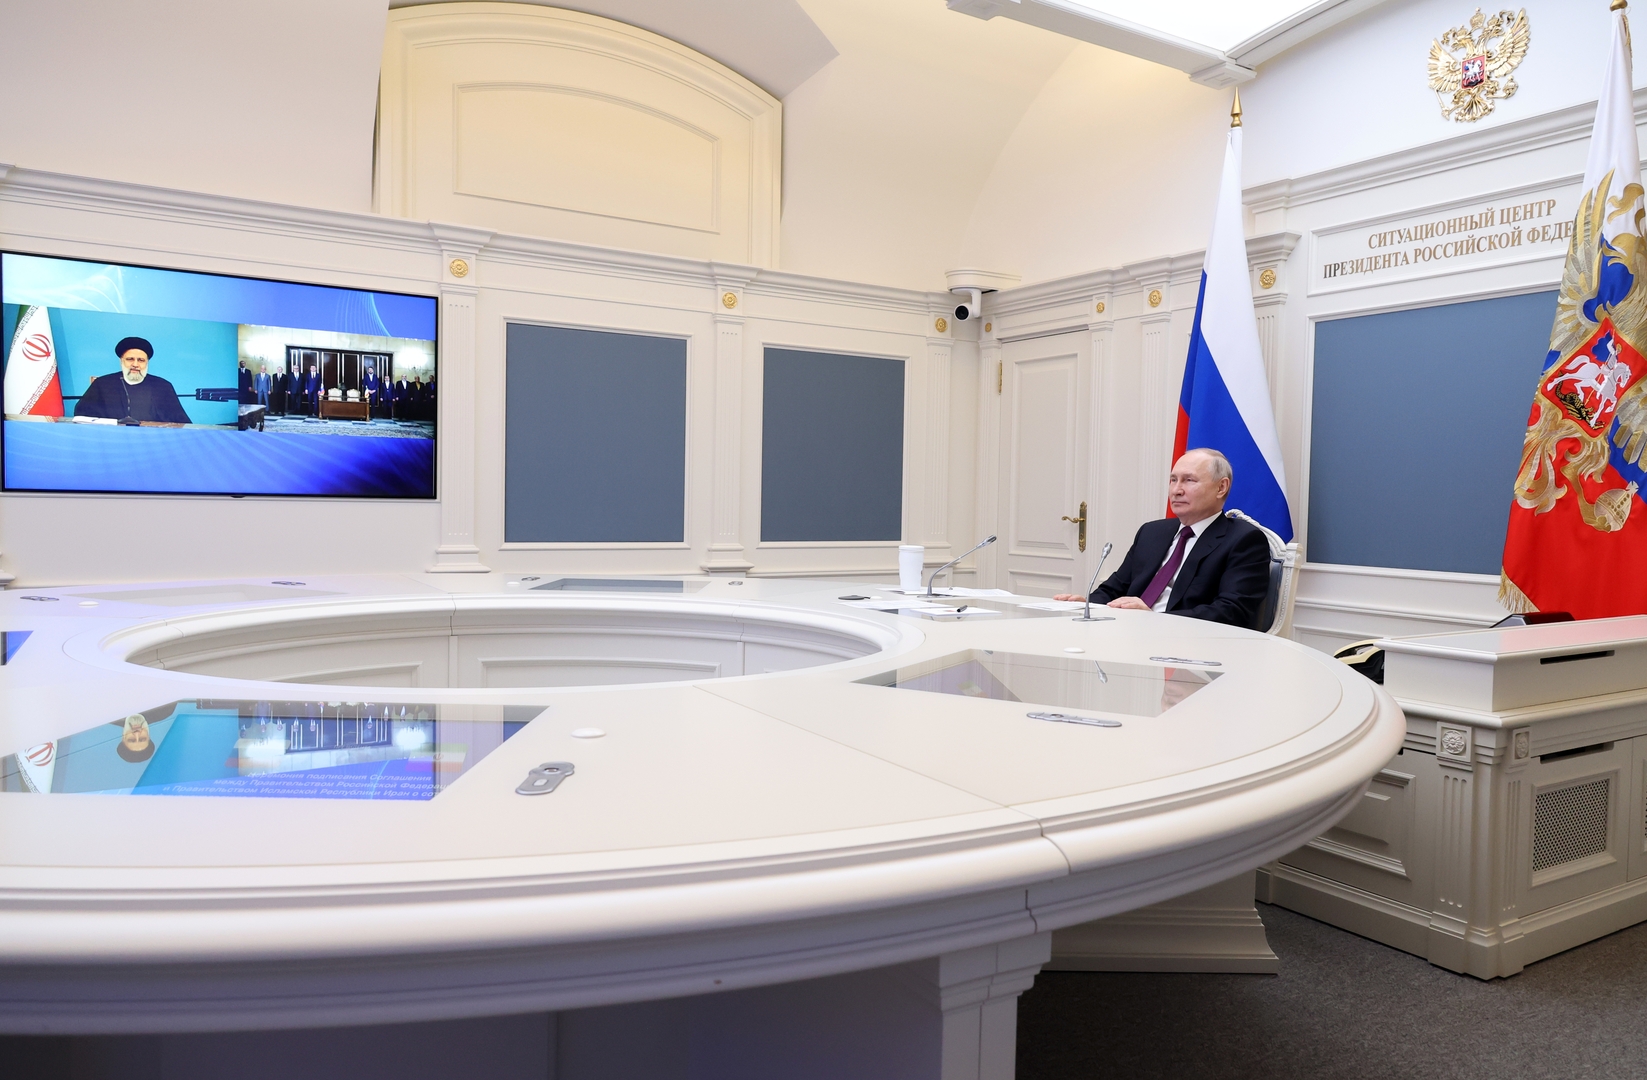 برعاية بوتين ورئيسي.. روسيا وإيران توقعان اتفاقية لتشييد شريان اقتصادي